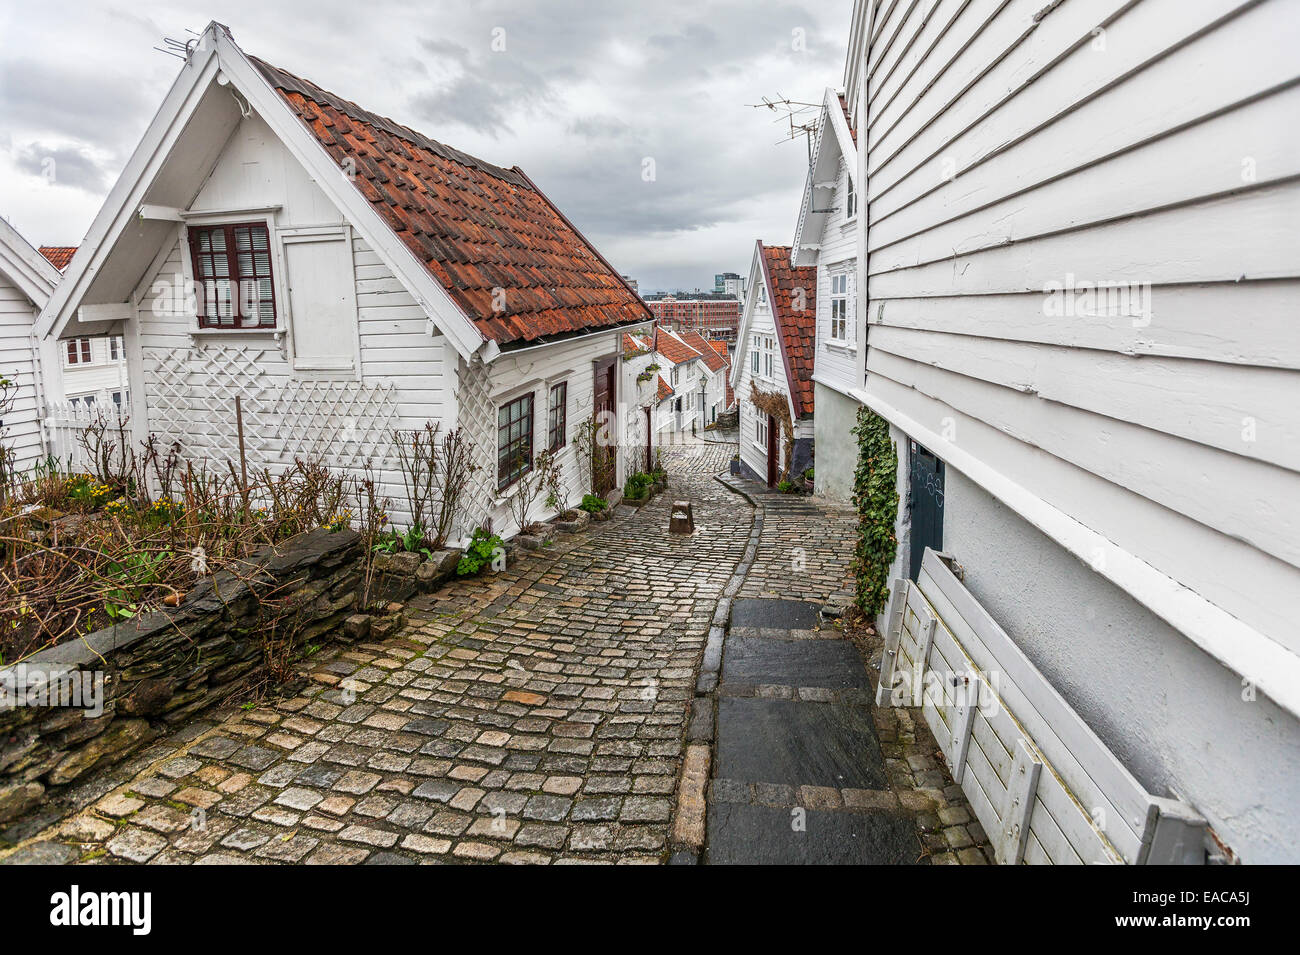 Le 18ème siècle, village de pêcheurs Vieux Stavanger en Norvège comprenant 173 bâtiments en bois blanc principalement. Banque D'Images